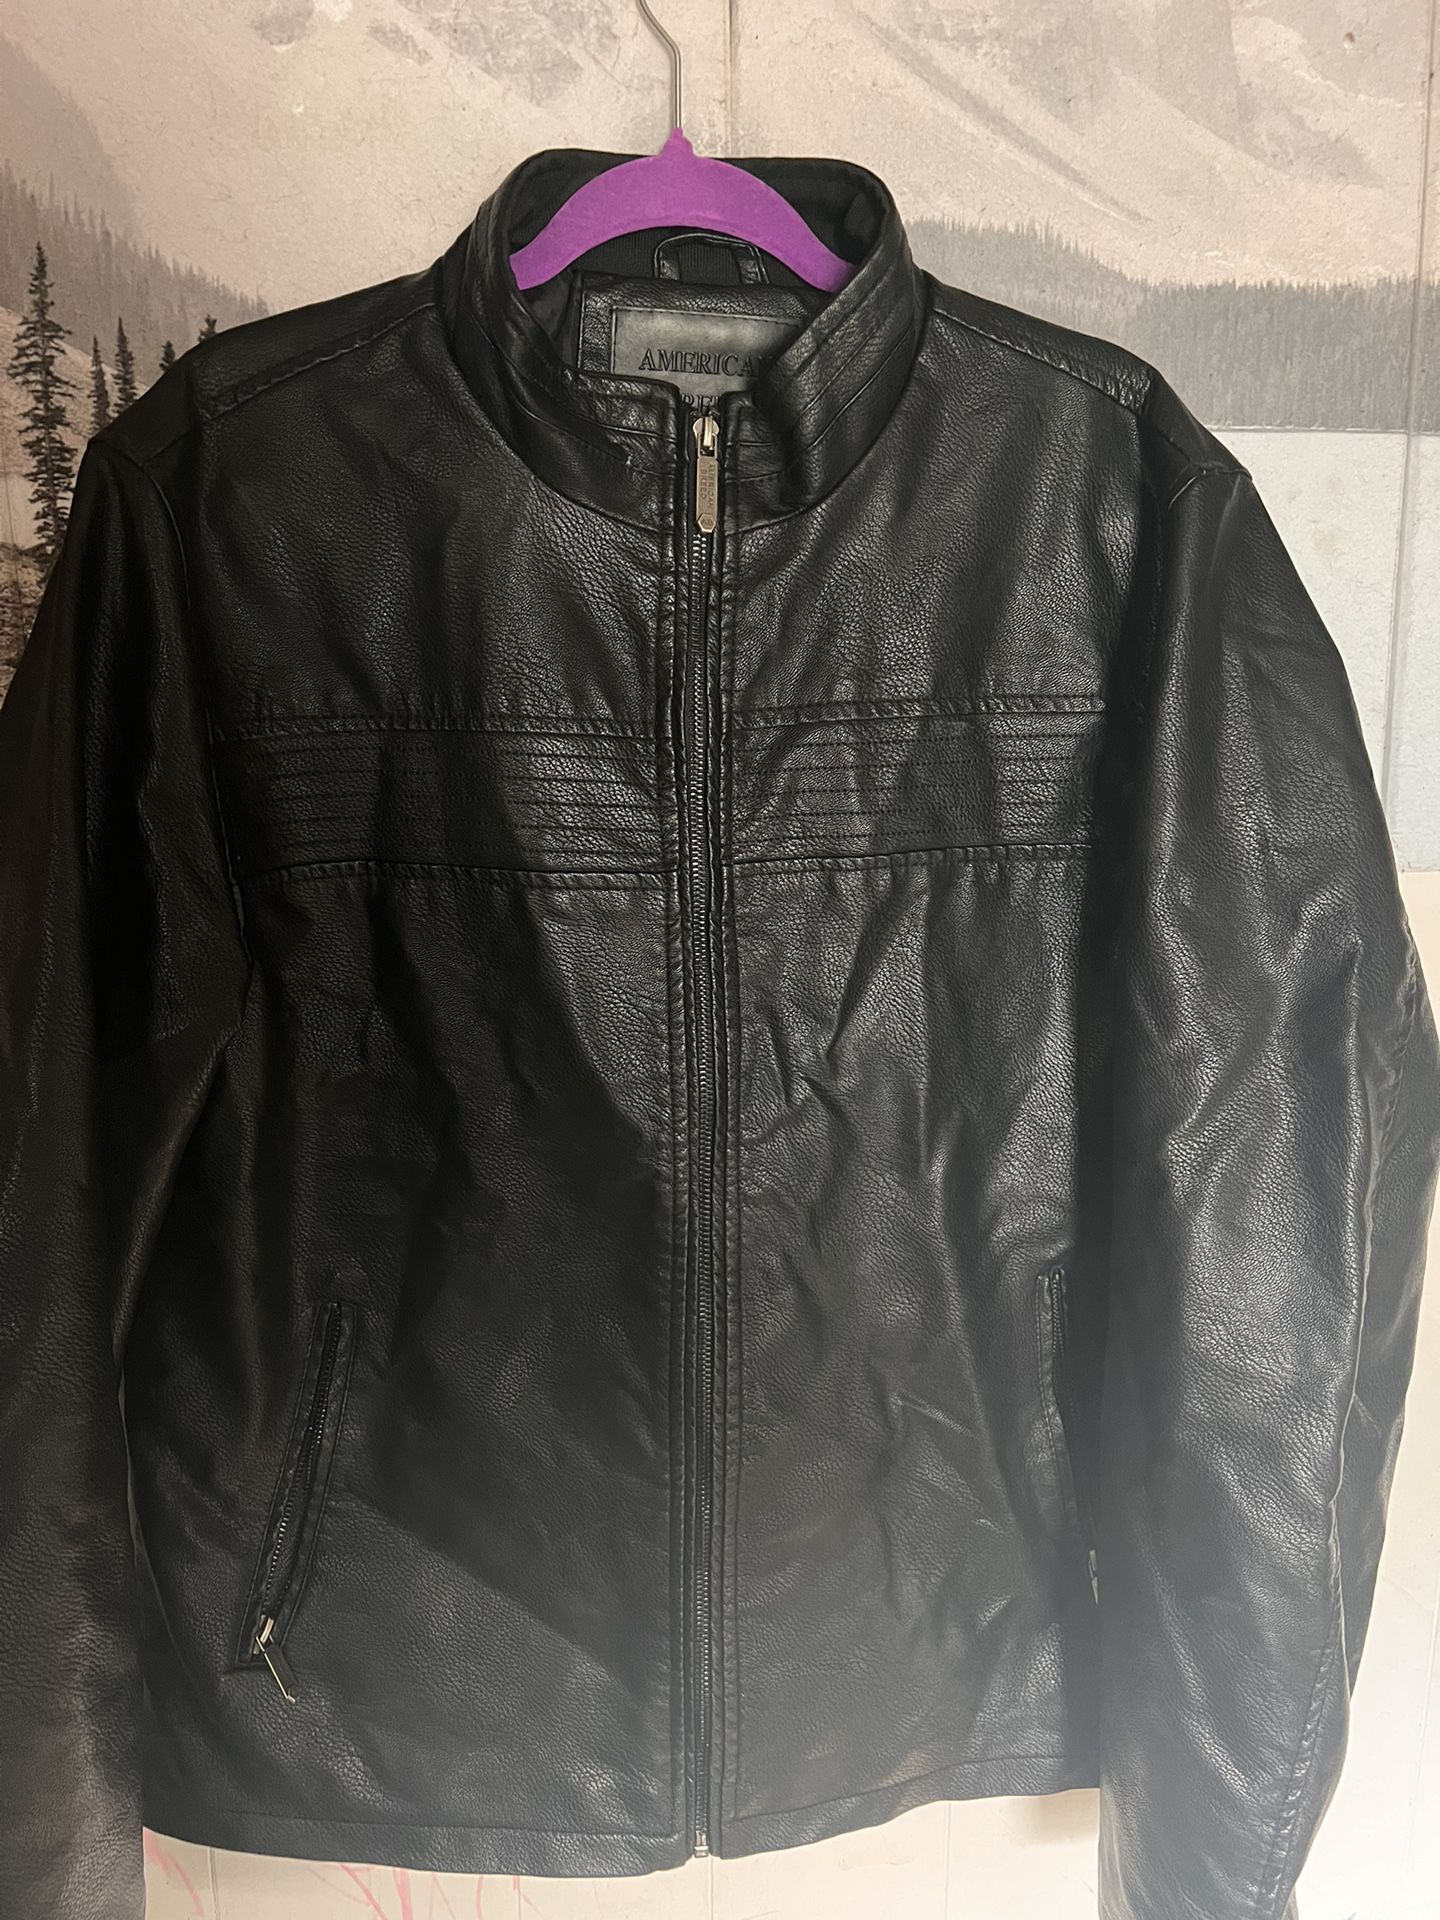 Black Leather Jacket 